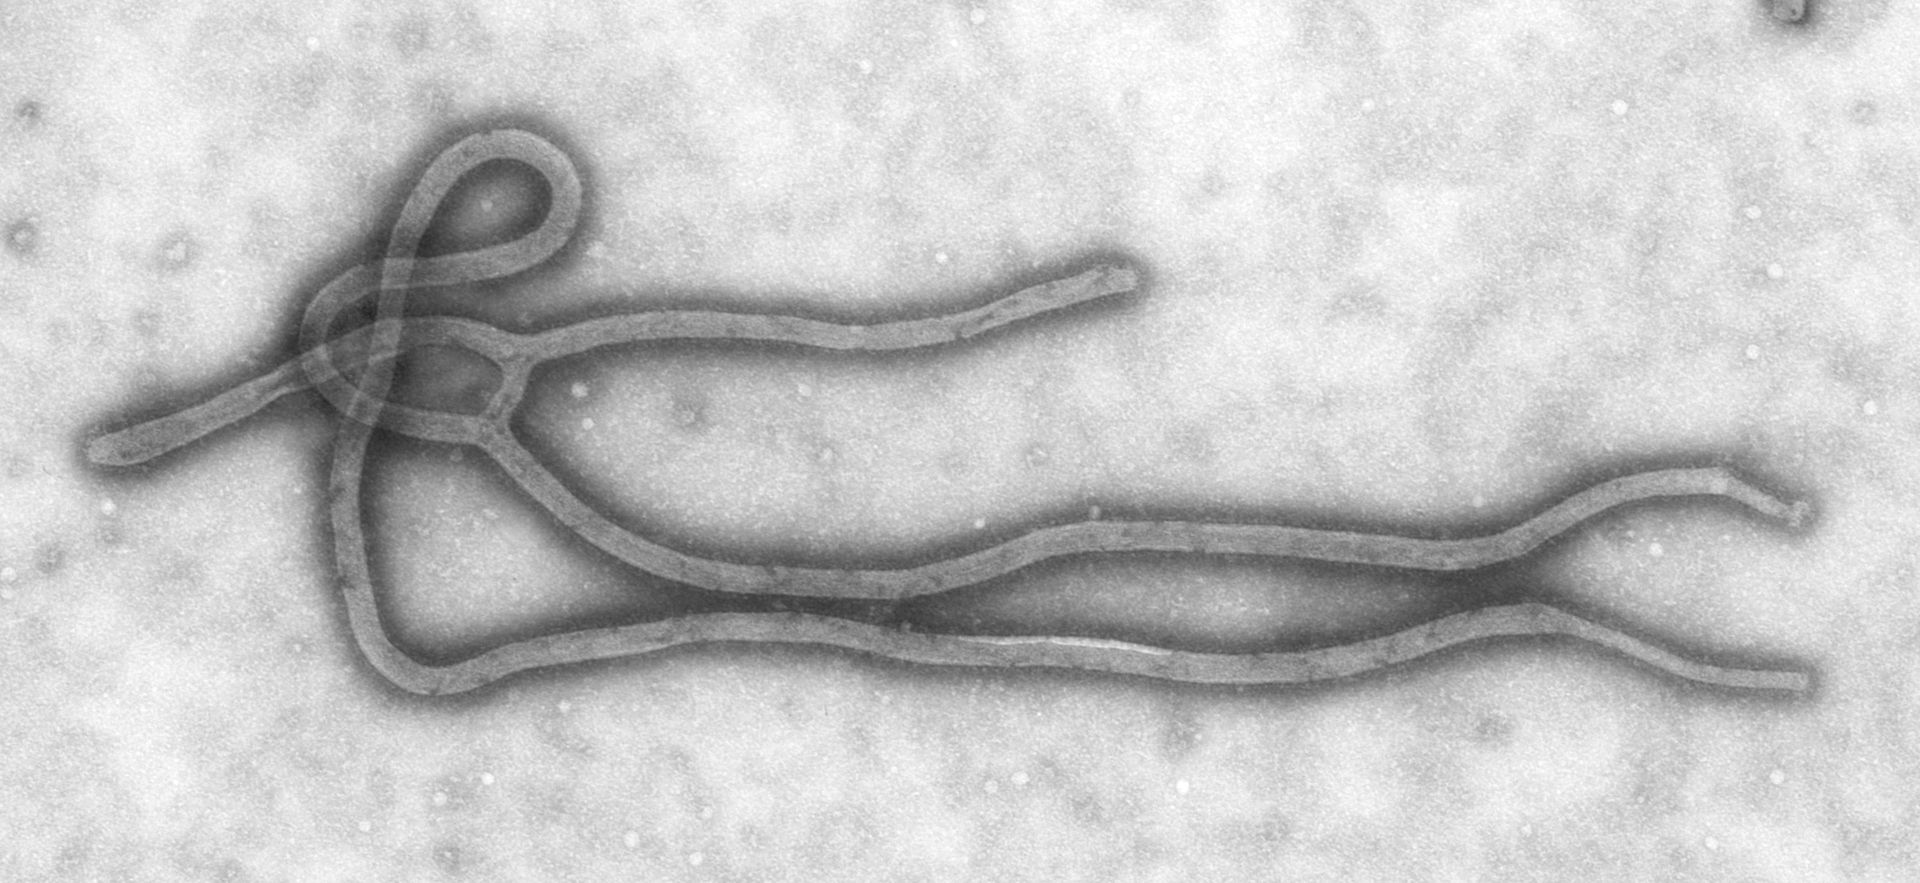 Ebola : les recommandations des organisations de la santé, de l'aérien et du tourisme